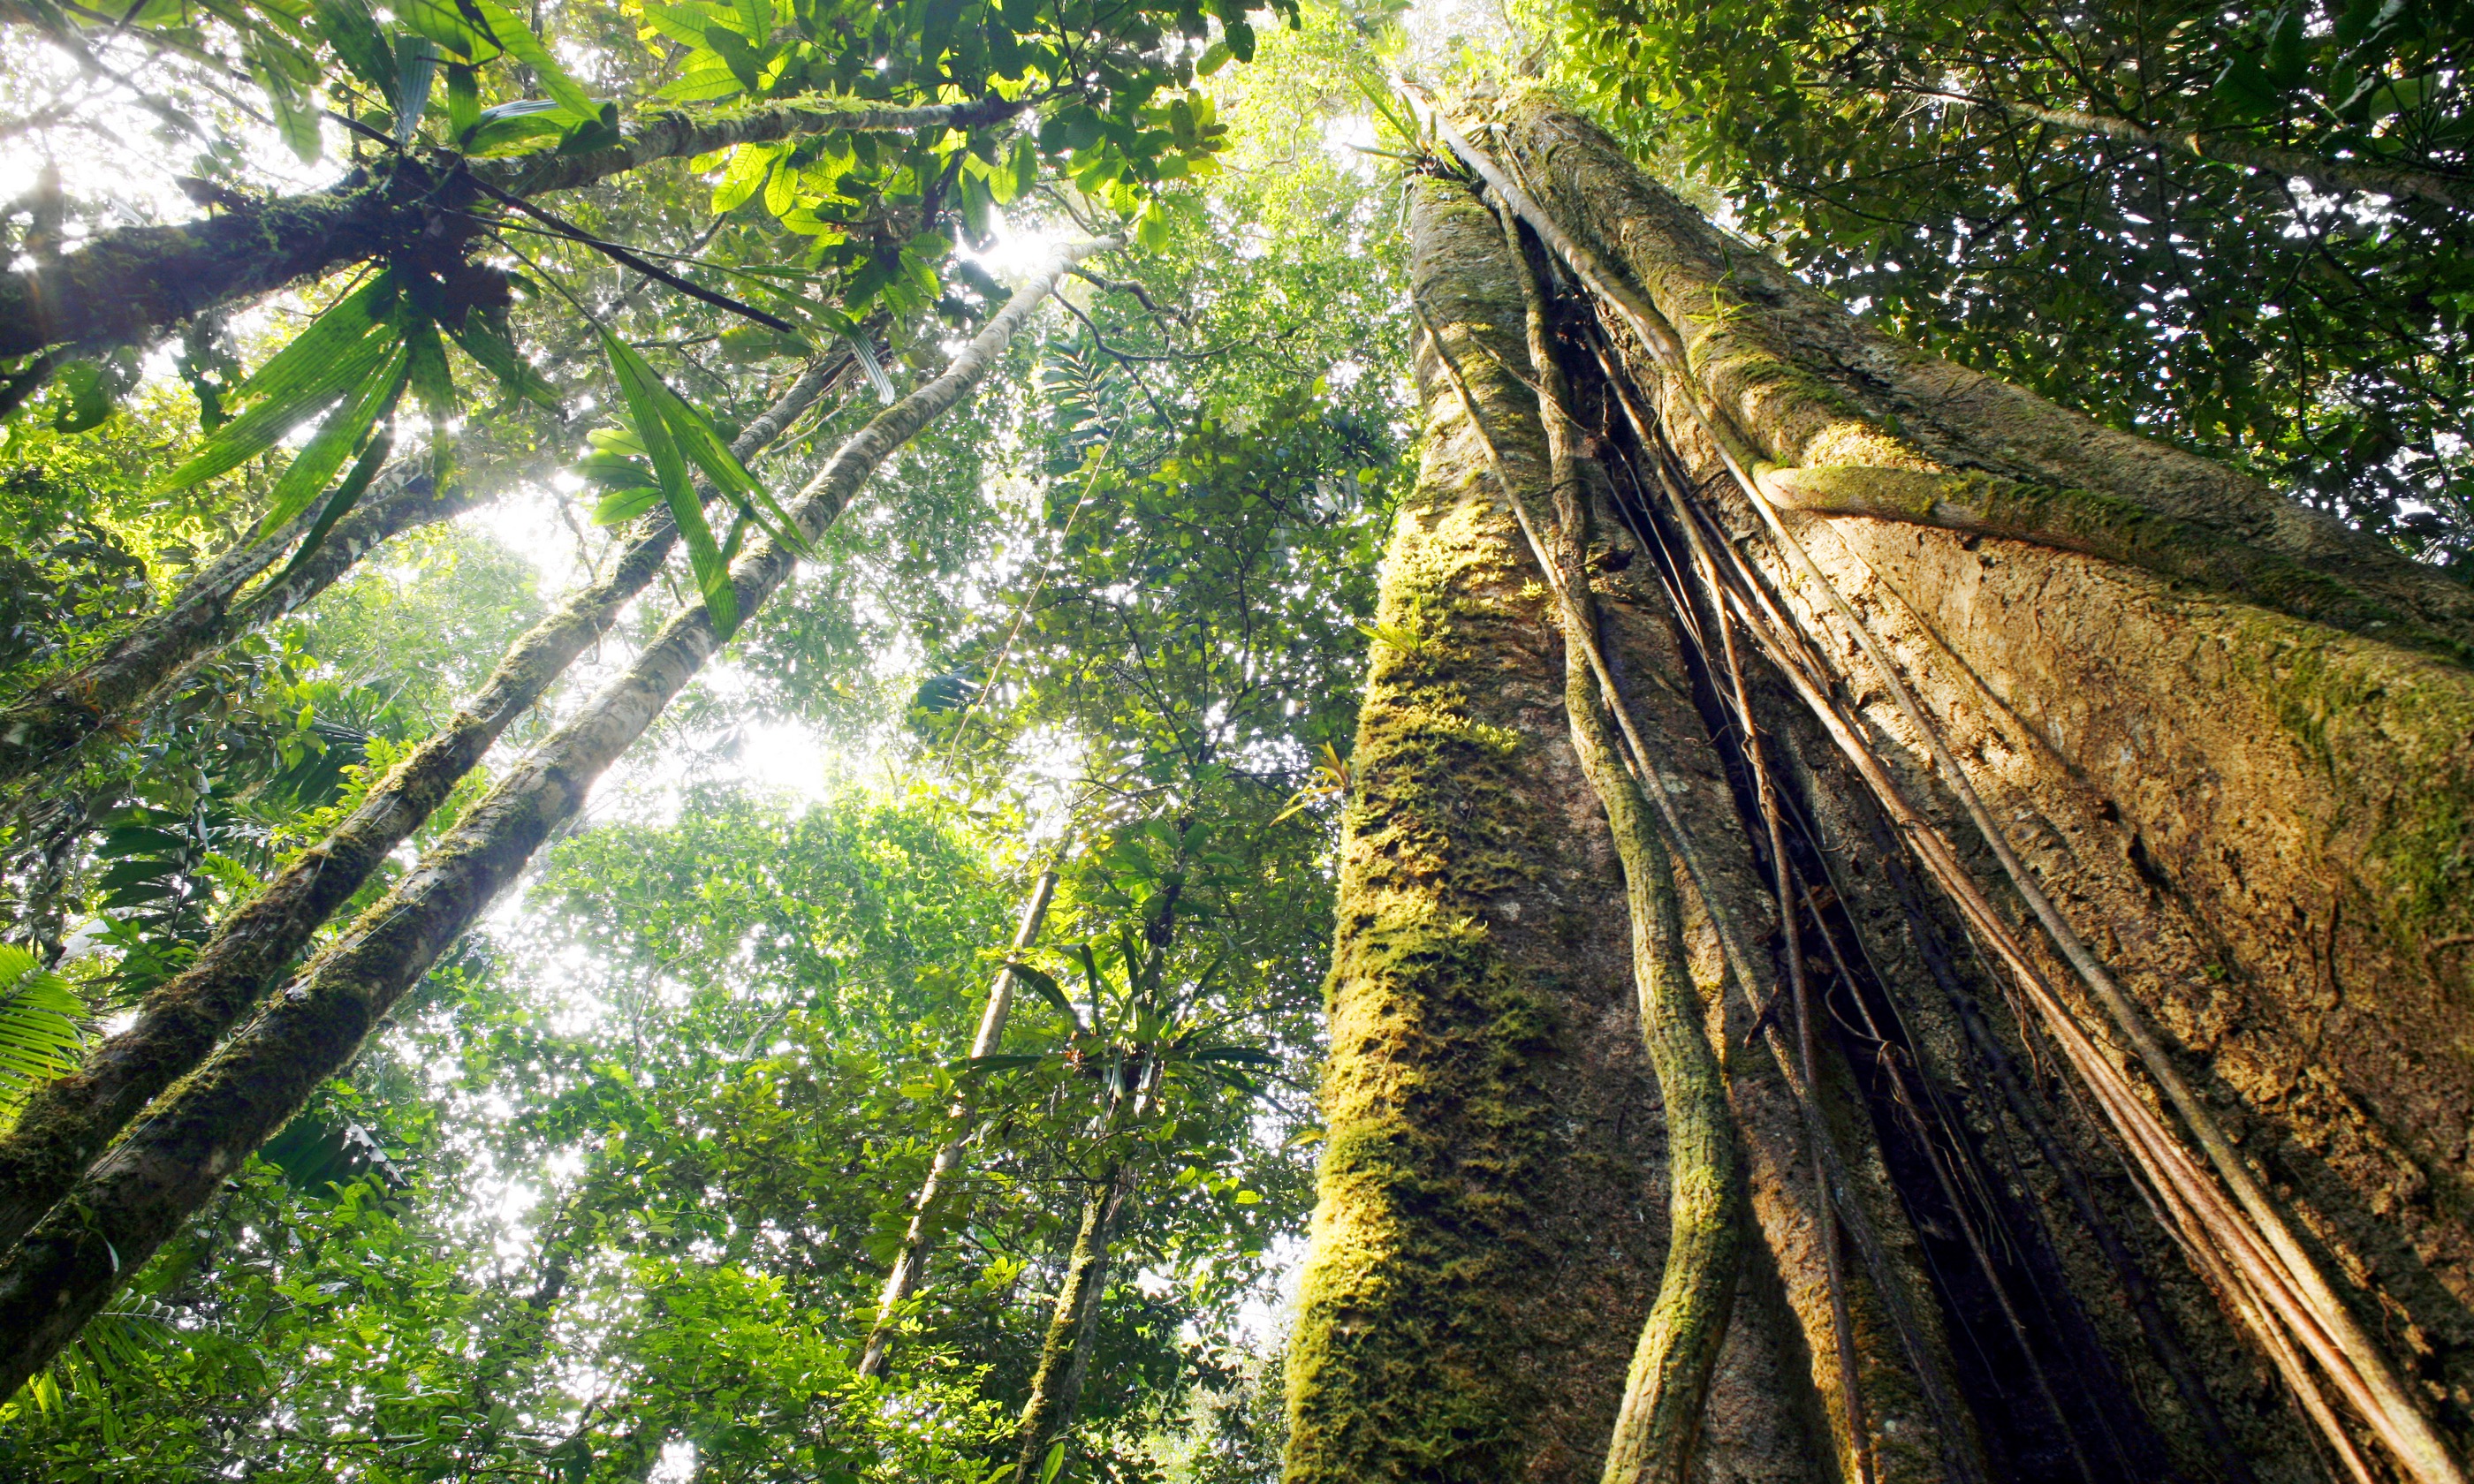 Giant rainforest tree, Ecuador (Shutterstock.com)